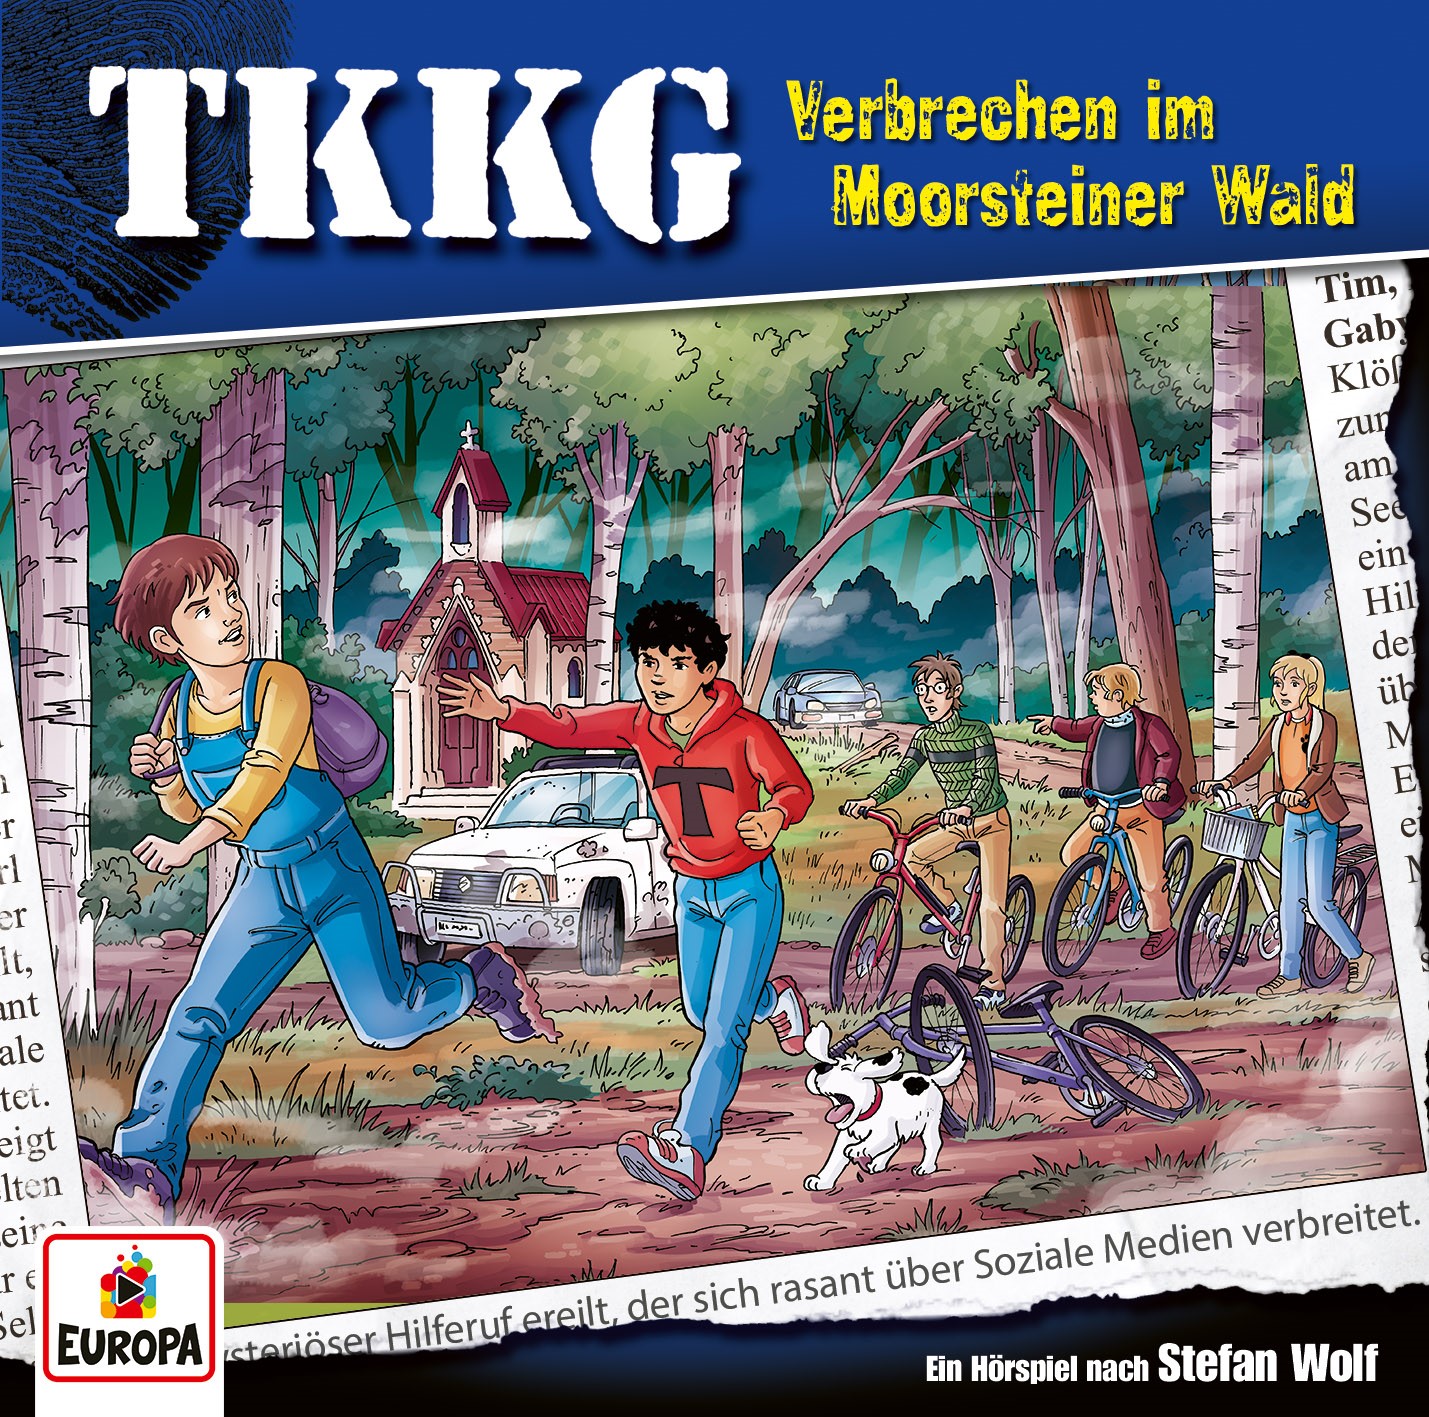 TKKG: Verbrechen im Moorsteiner Wald